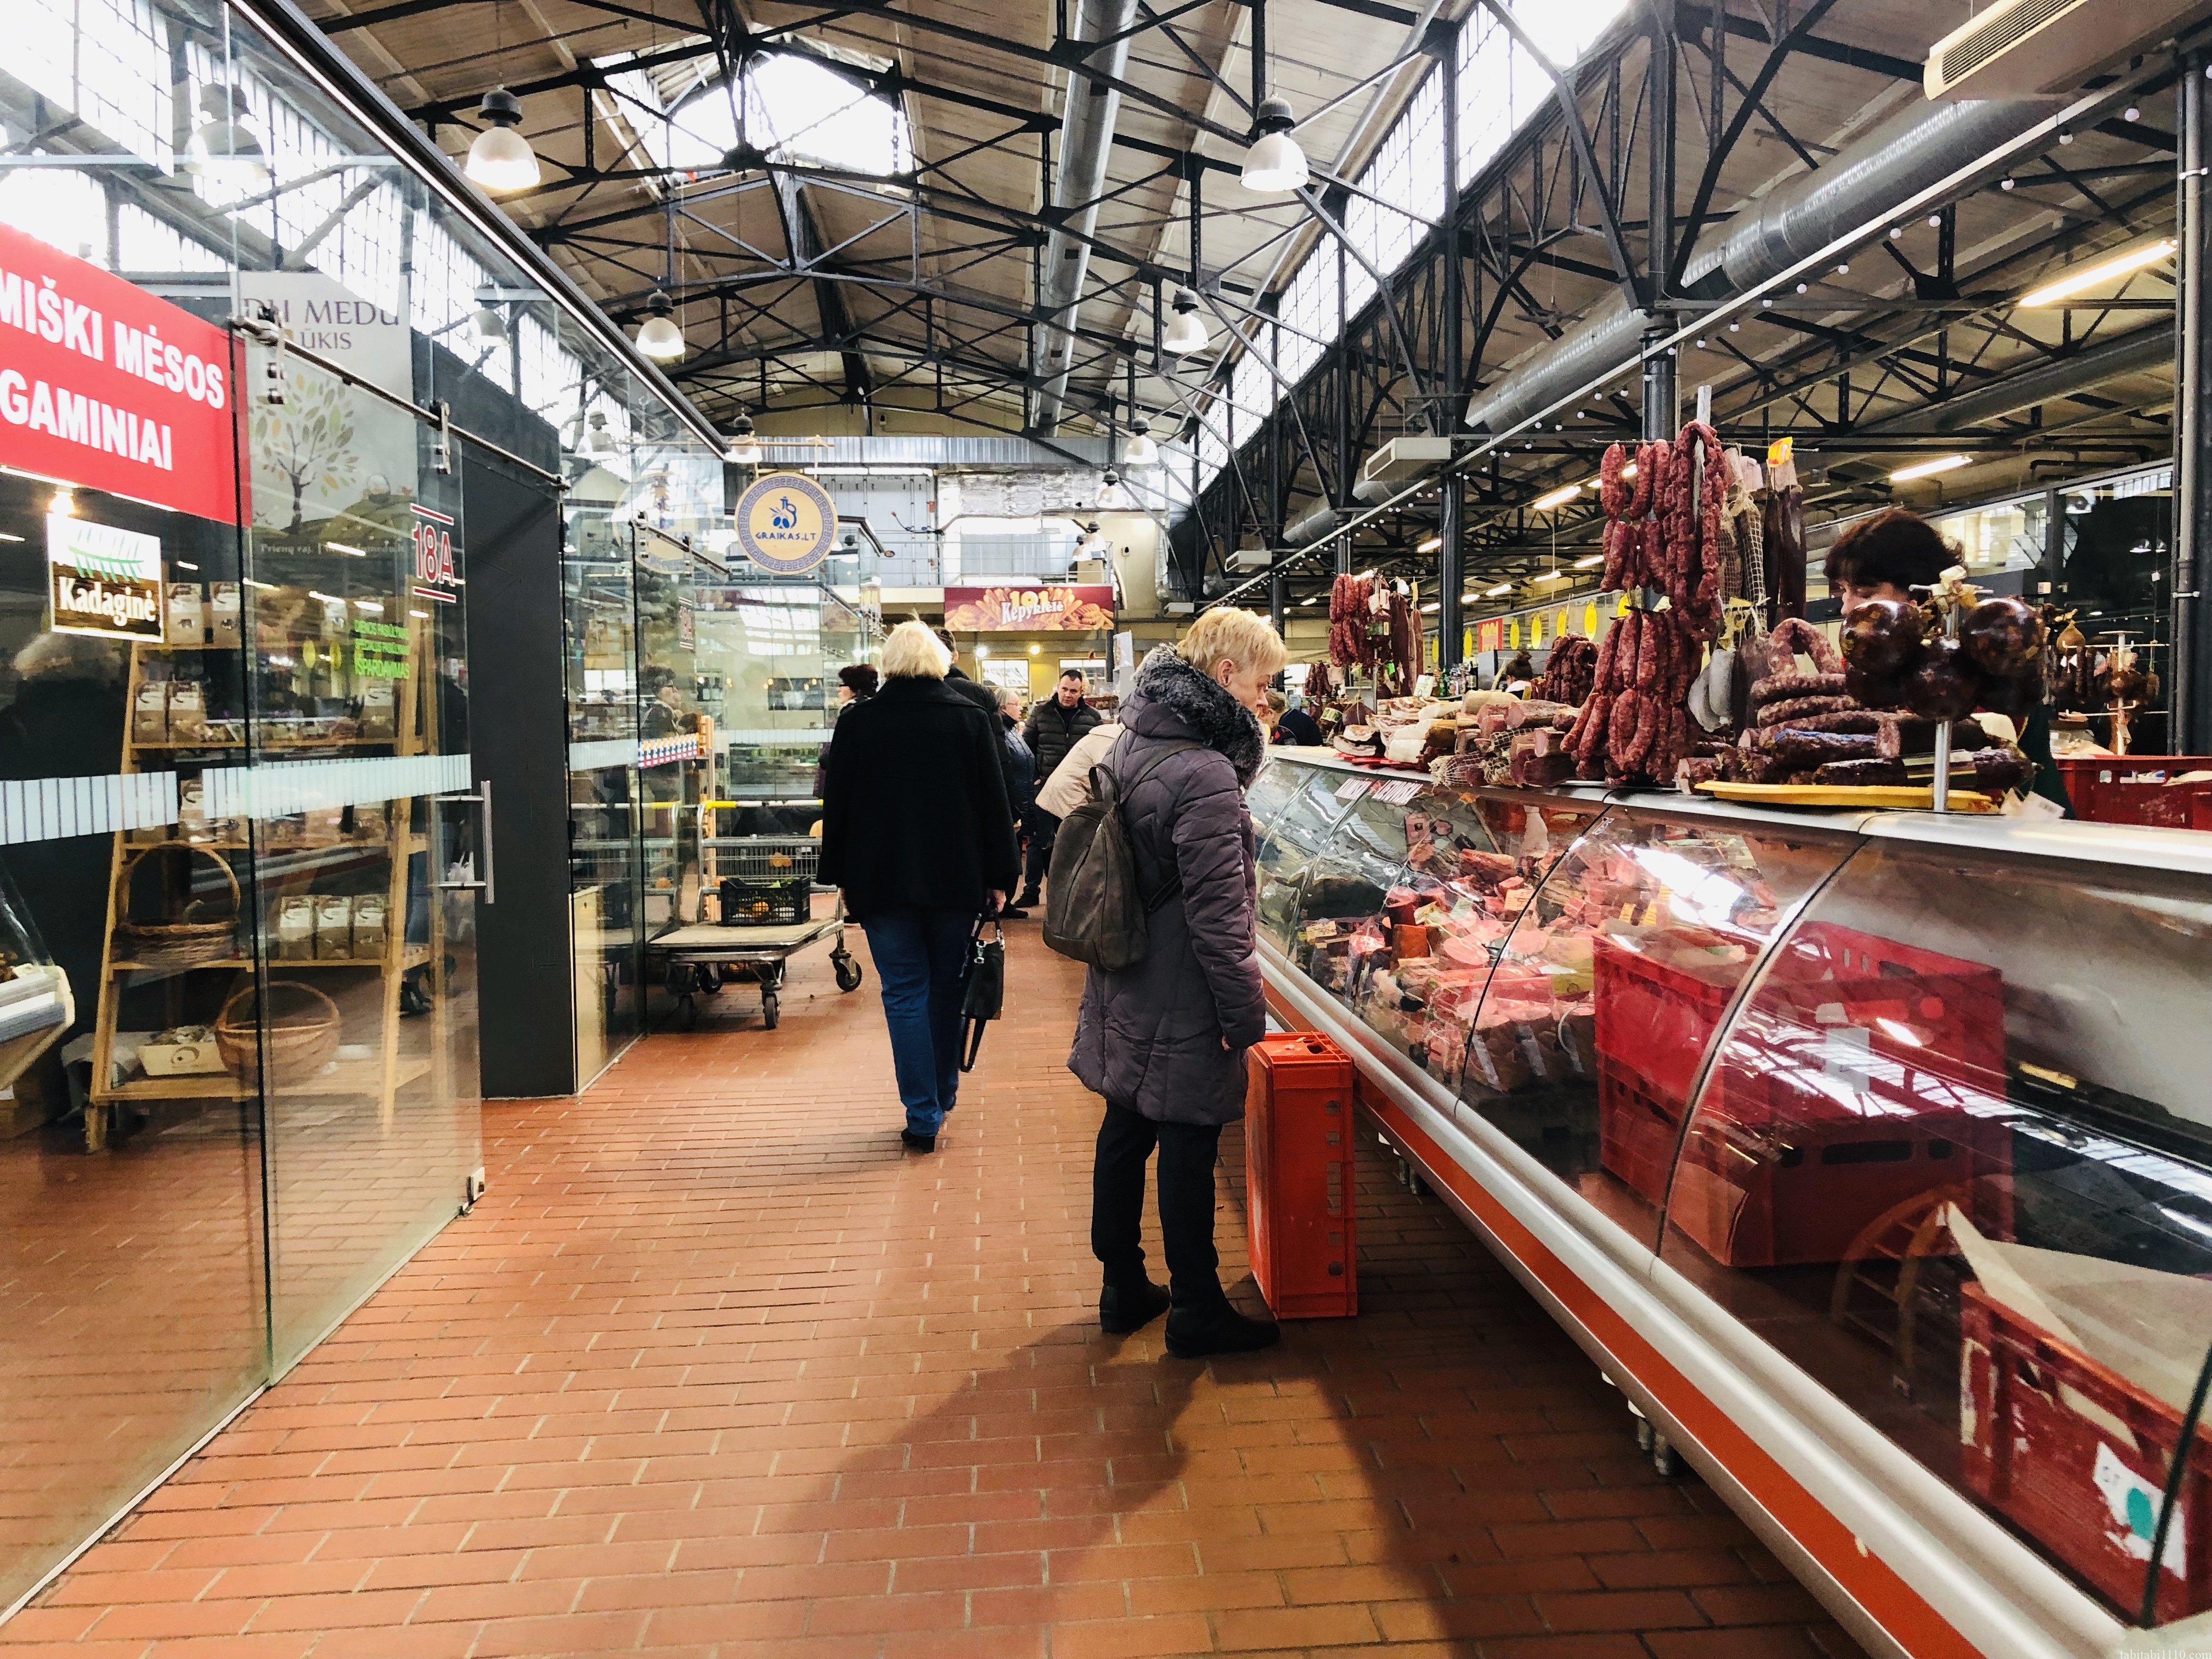 Halle Market